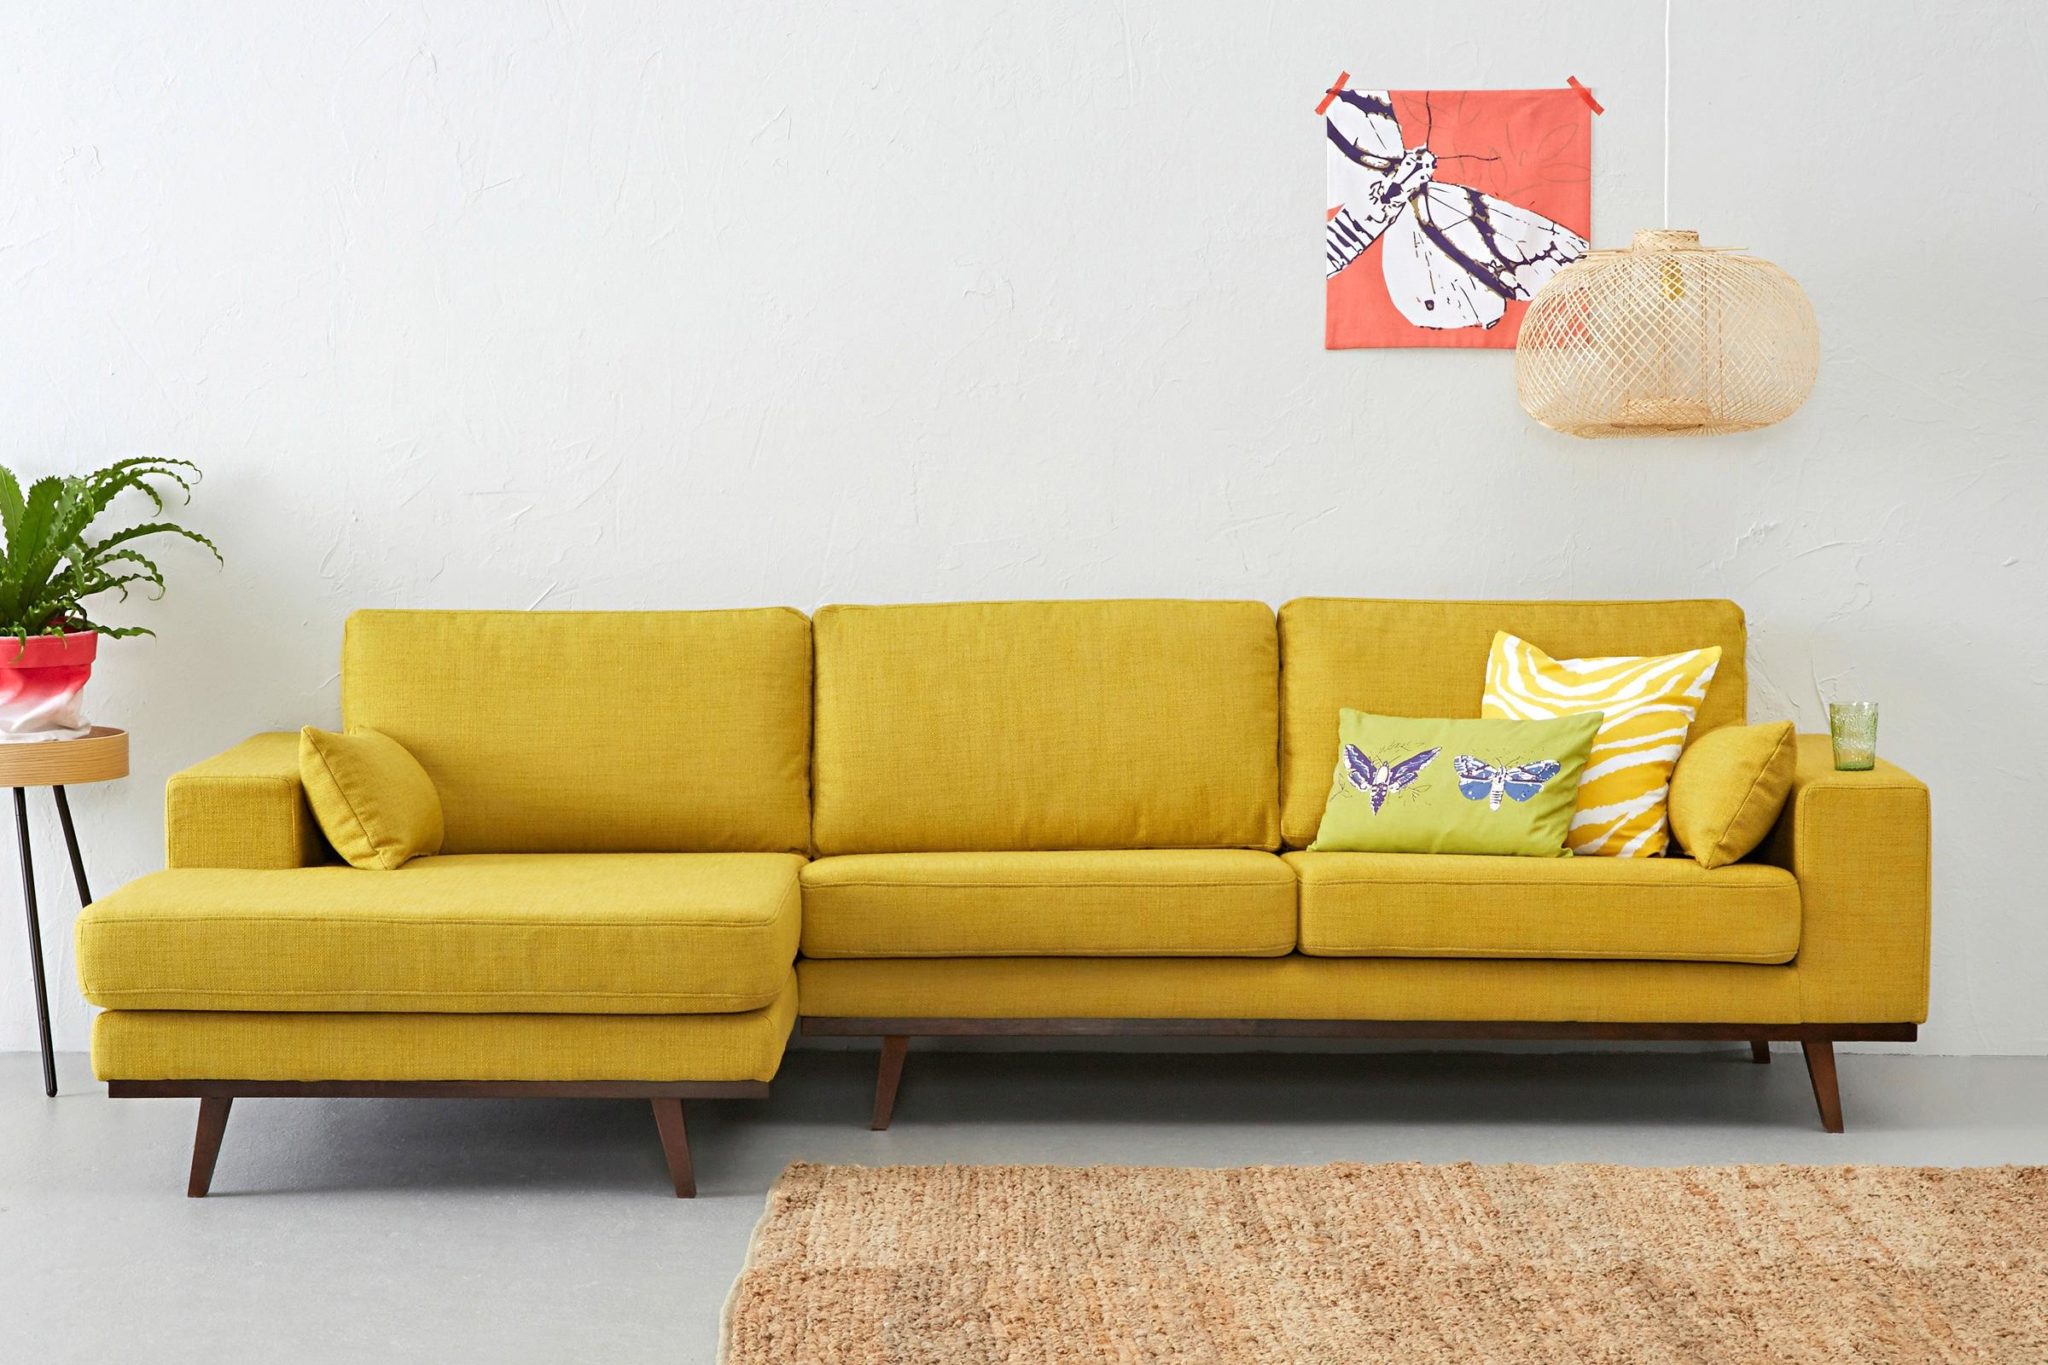 Sofa in a calmer hue of yellow